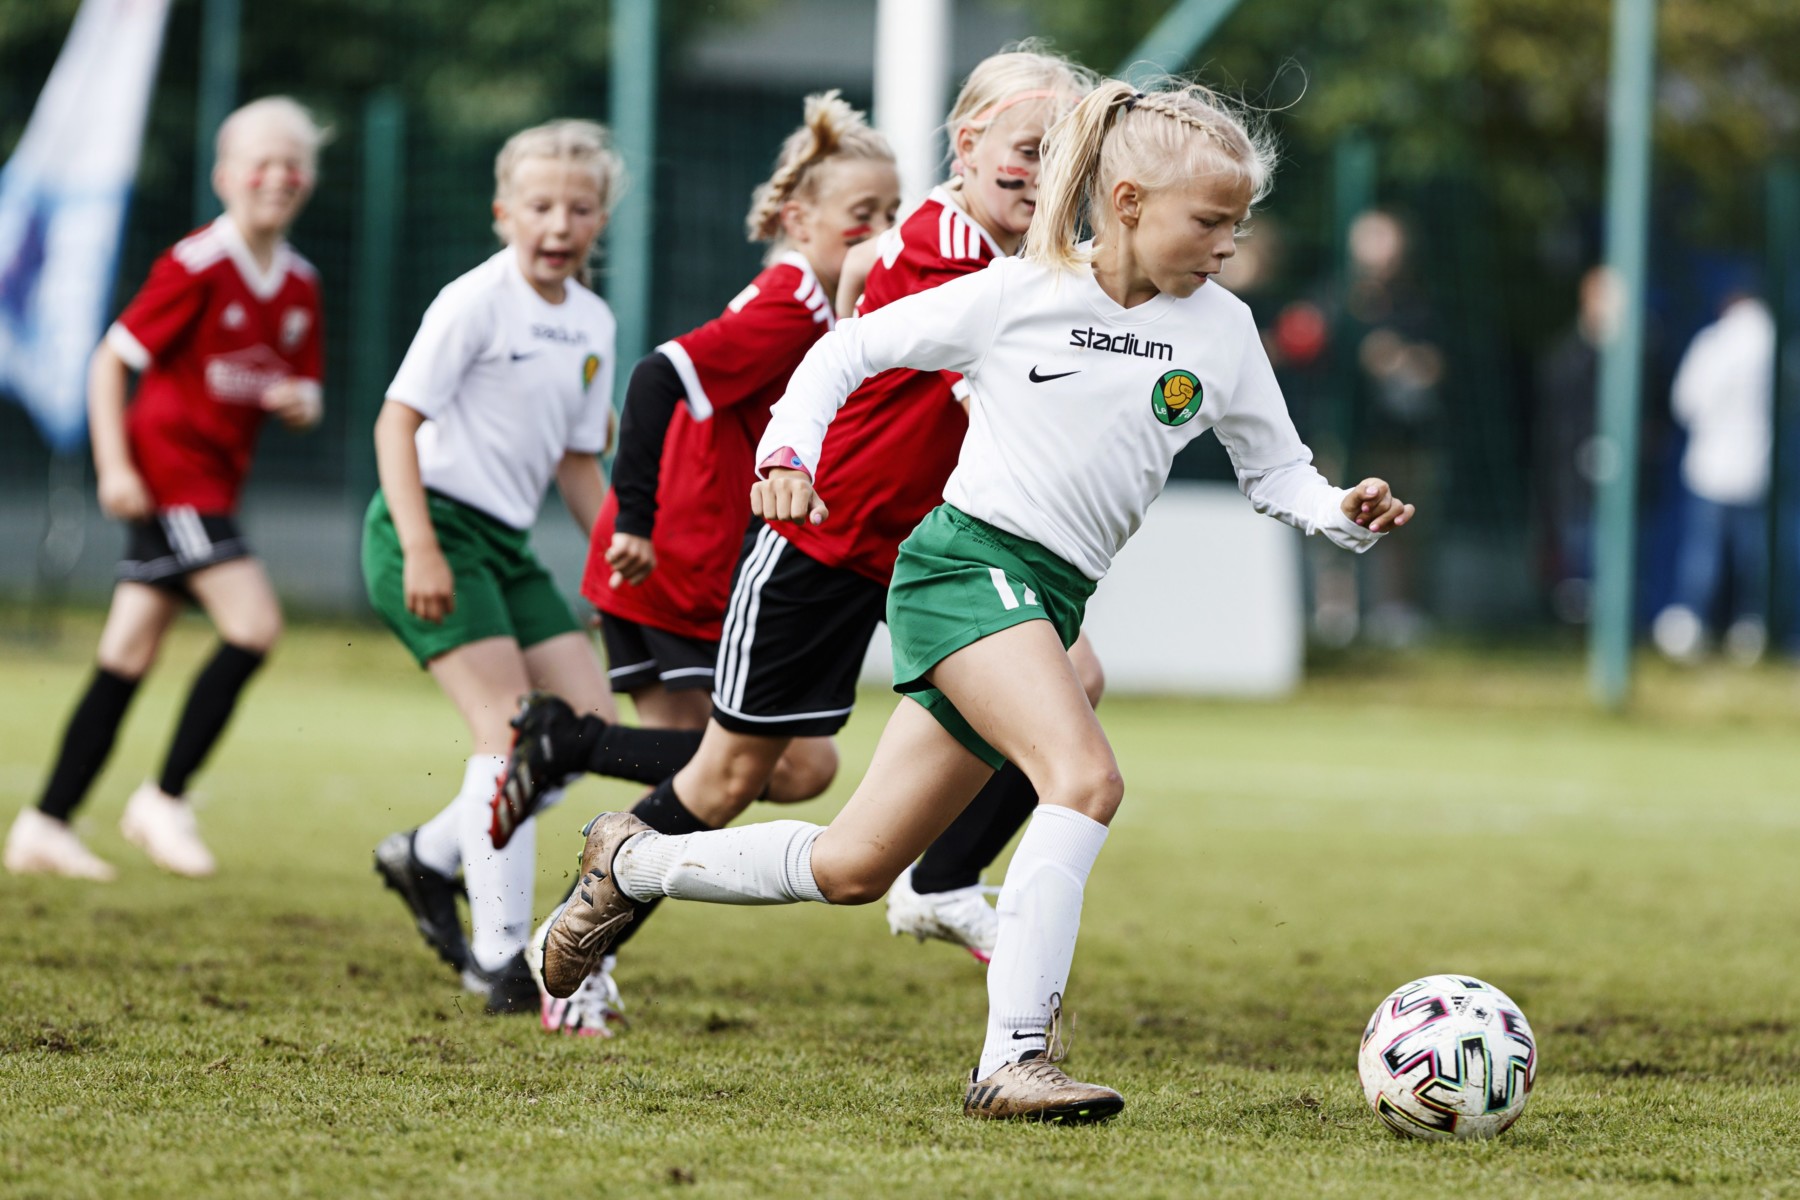 Ein Mädchen dribbelt einen Fußball und rennt mehreren anderen Mädchen davon.